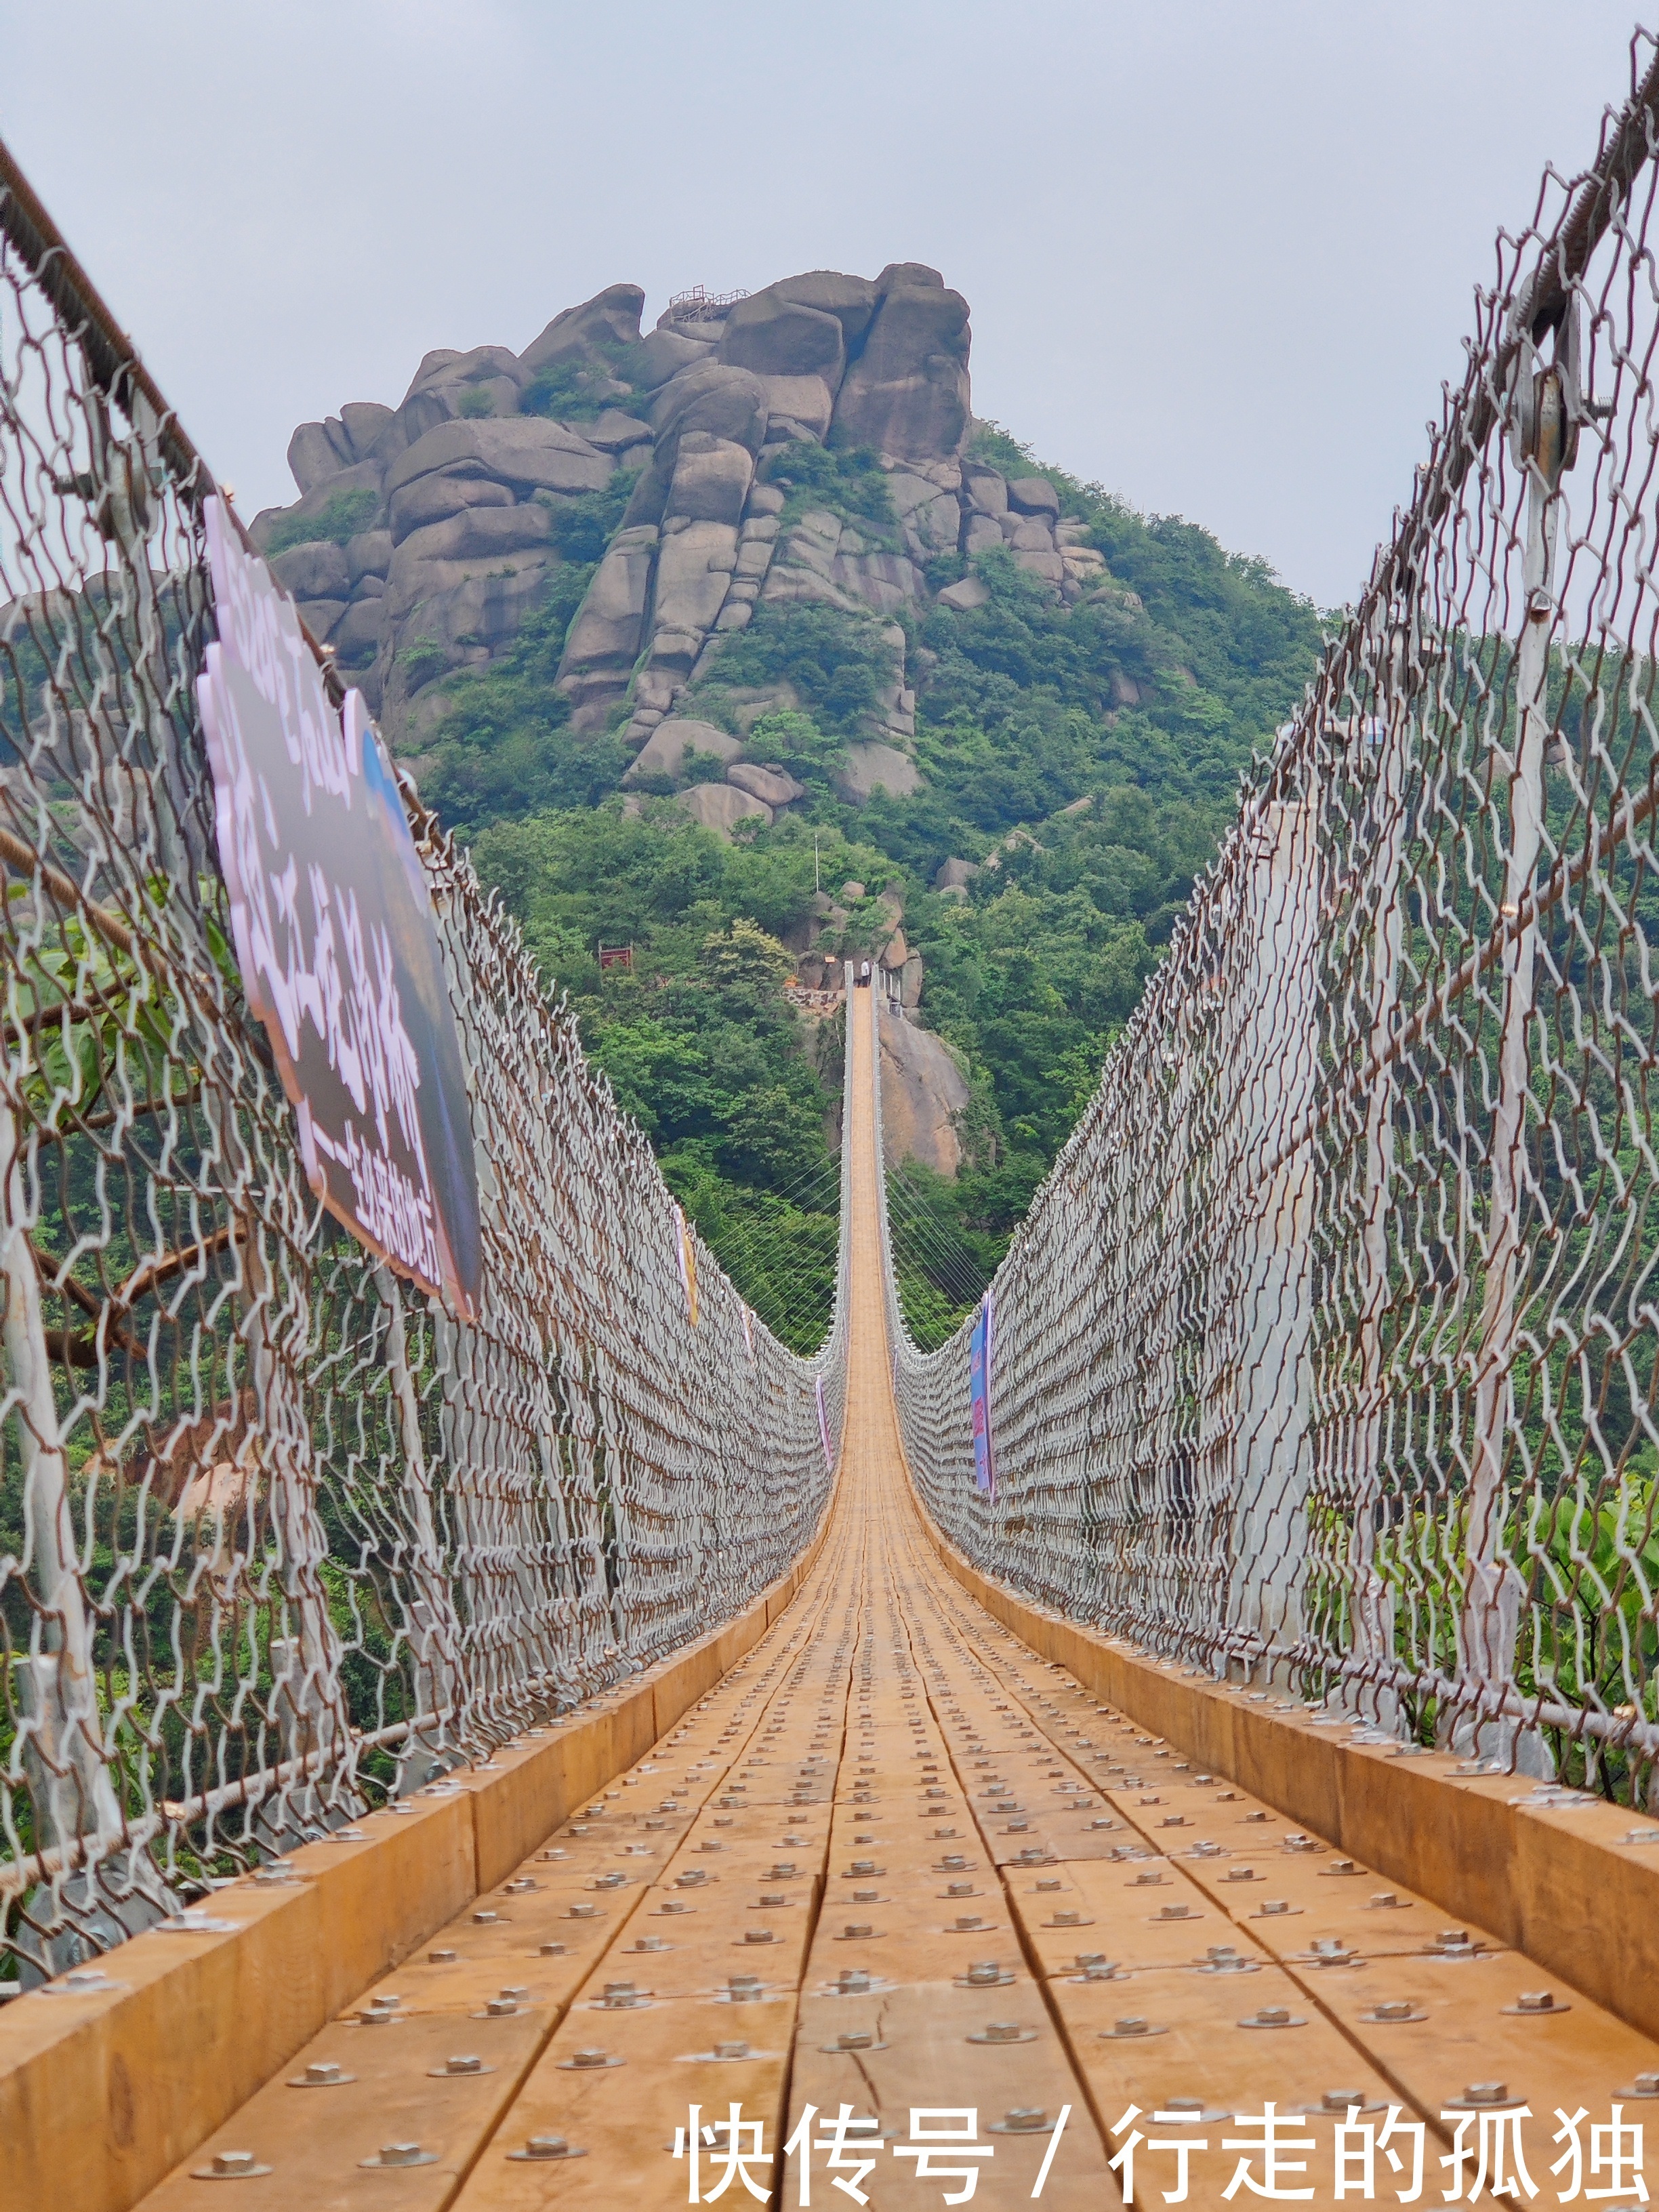 龙头峰|巨石山丨过江龙吊桥，横跨天险之上，挑战心跳极限，抒写九天热血